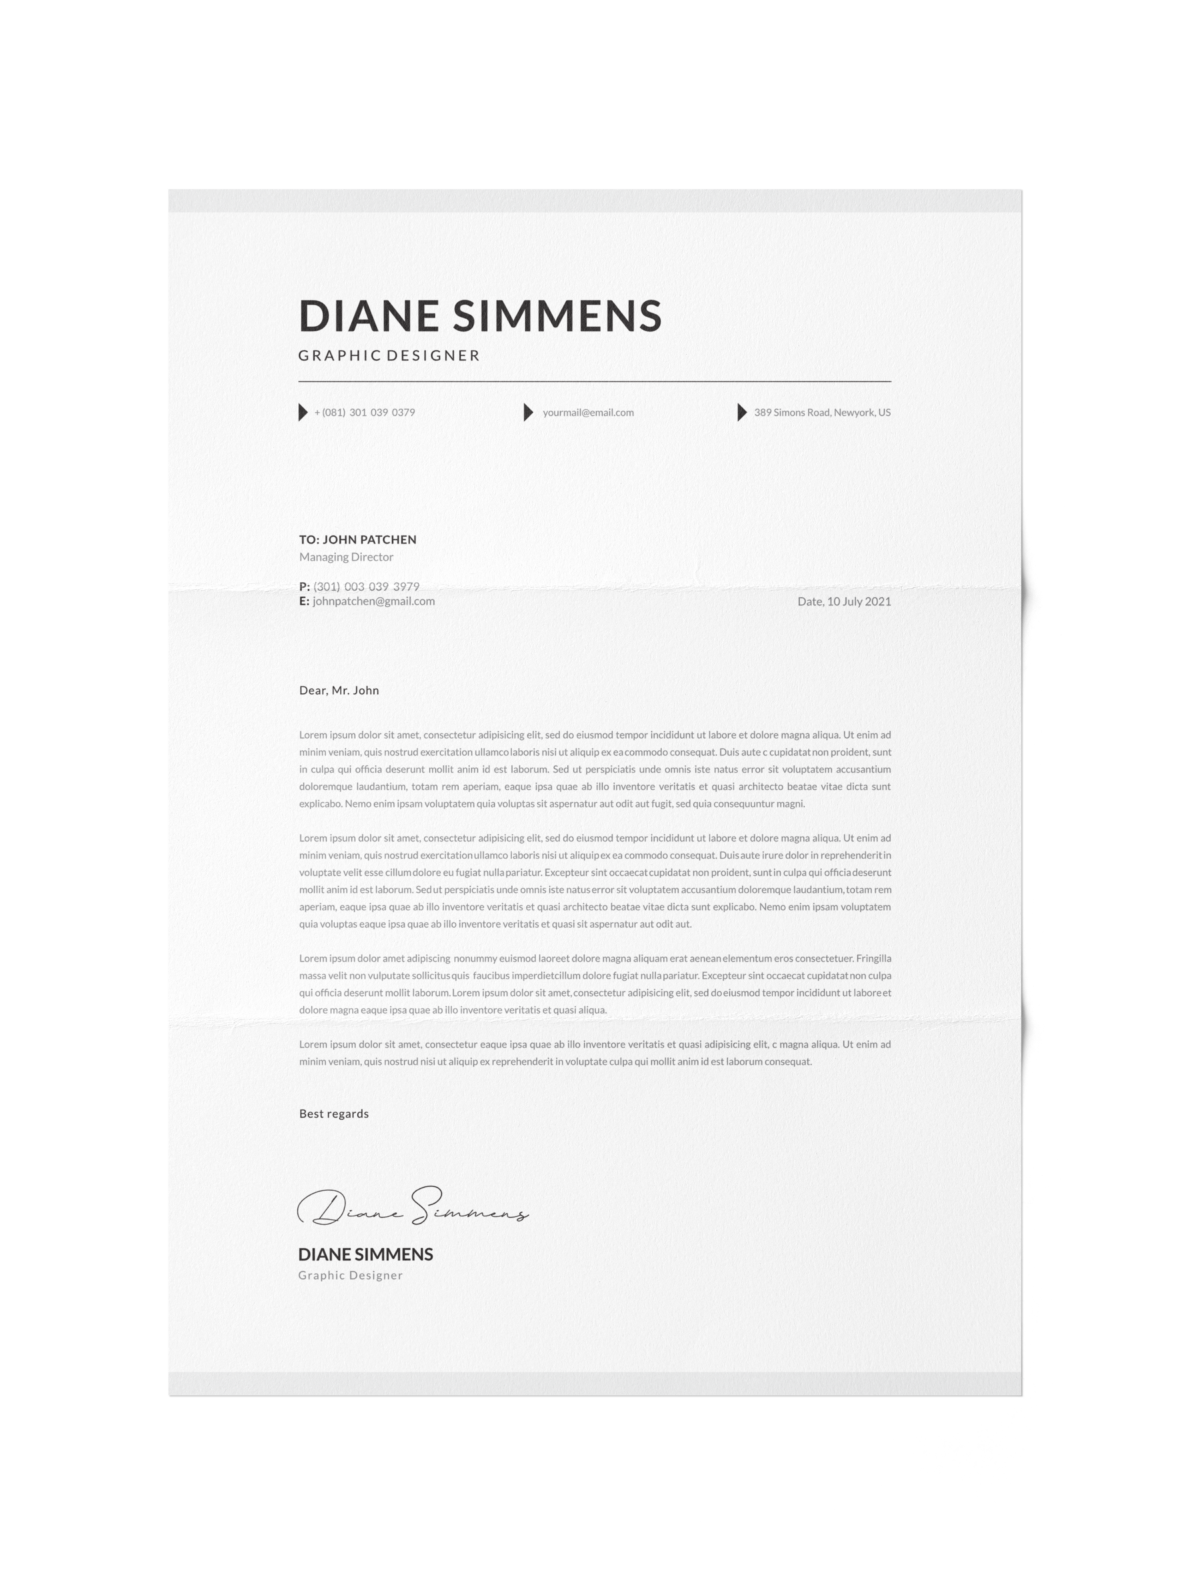 CV #75 Diane Simmens